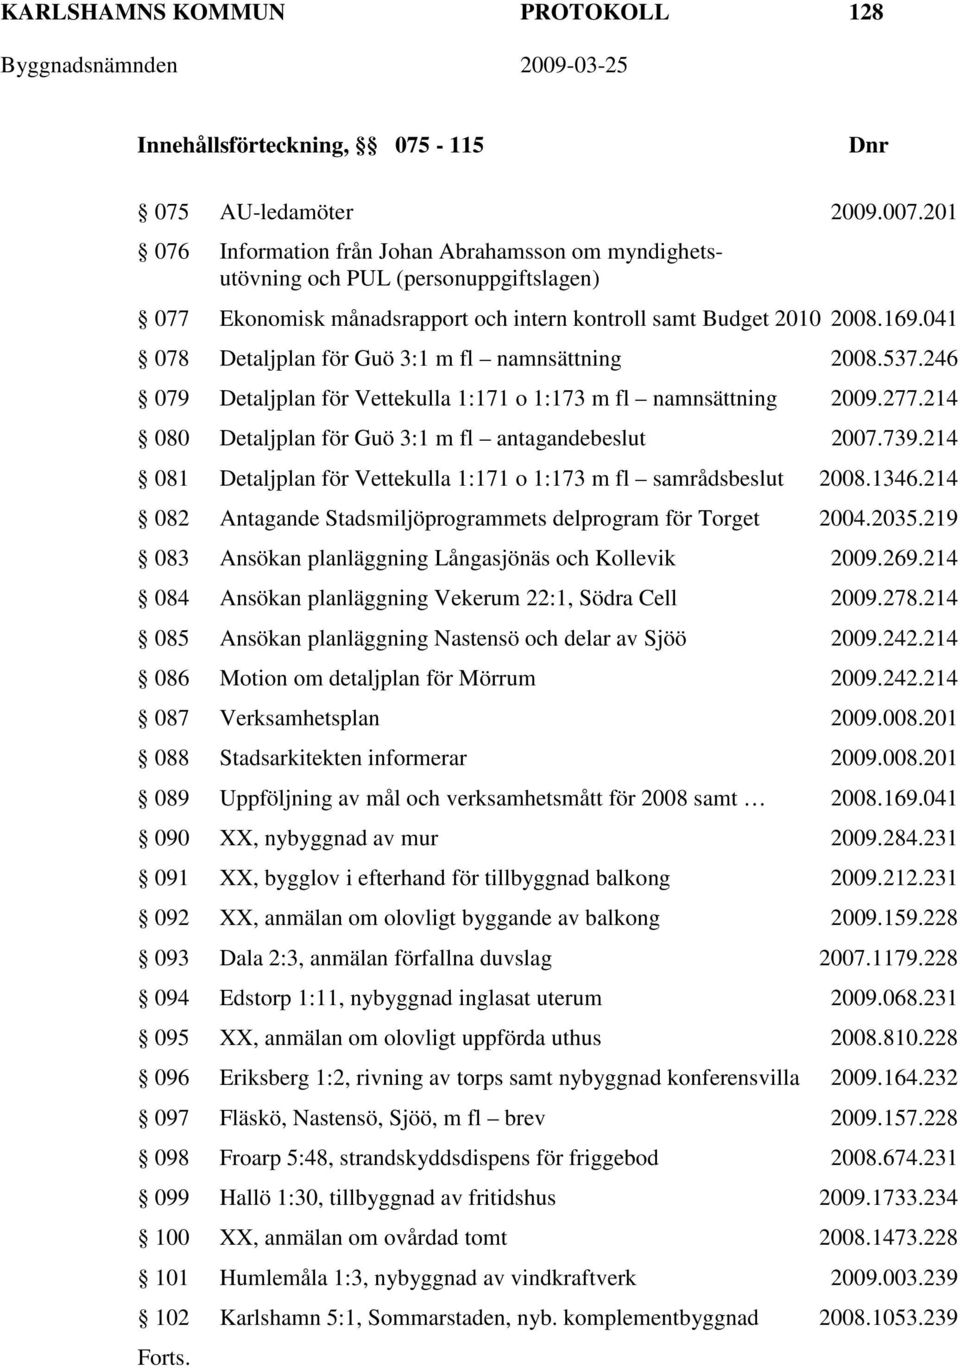 041 078 Detaljplan för Guö 3:1 m fl namnsättning 2008.537.246 079 Detaljplan för Vettekulla 1:171 o 1:173 m fl namnsättning 2009.277.214 080 Detaljplan för Guö 3:1 m fl antagandebeslut 2007.739.